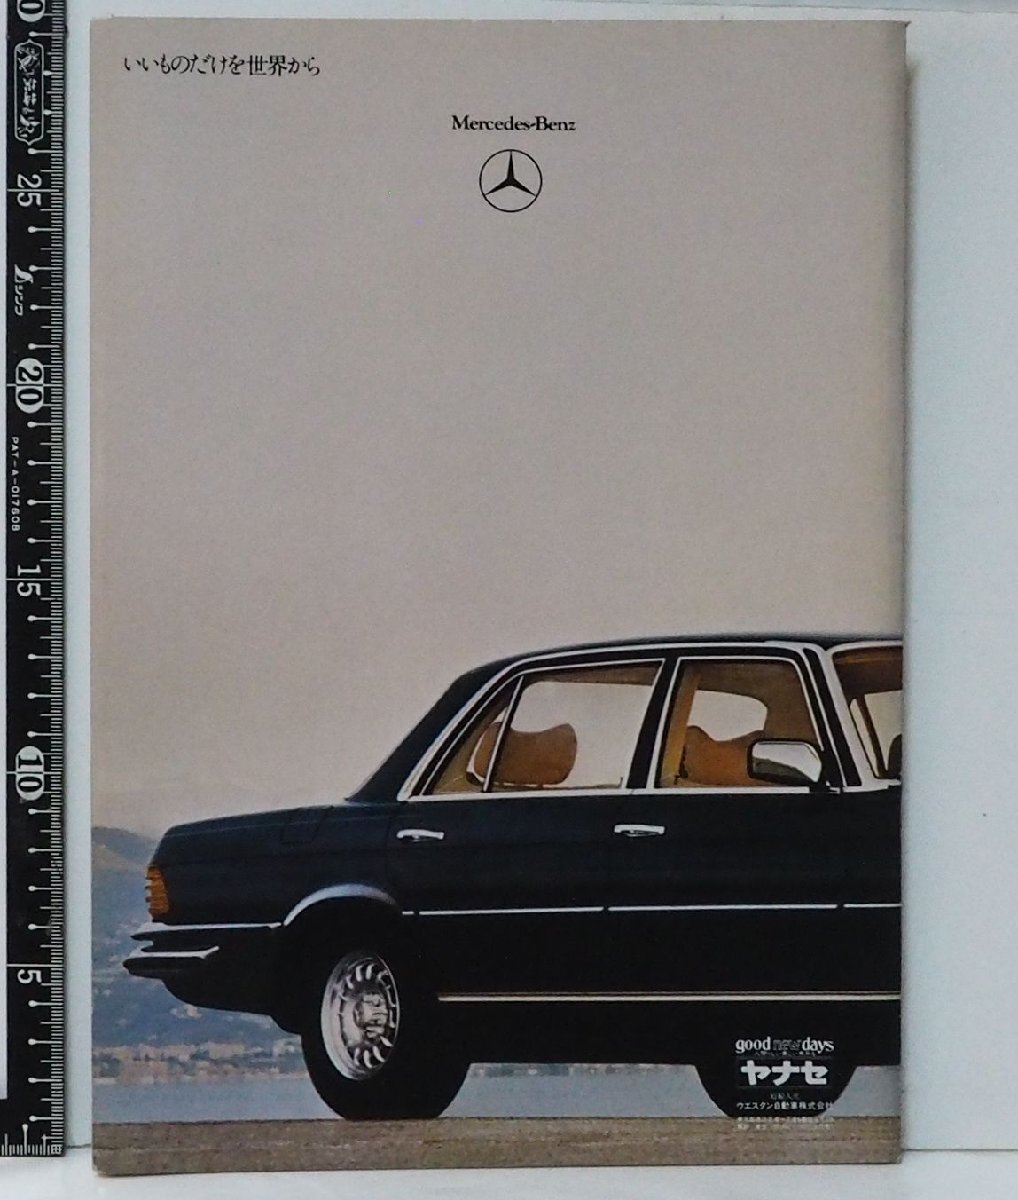 旧車カタログ 014【Mercedes Benz 450SE/SEL メルセデス ベンツ Sクラス セダン 日本語カタログ】80年代 当時物パンフレット【中古】送料込_画像２